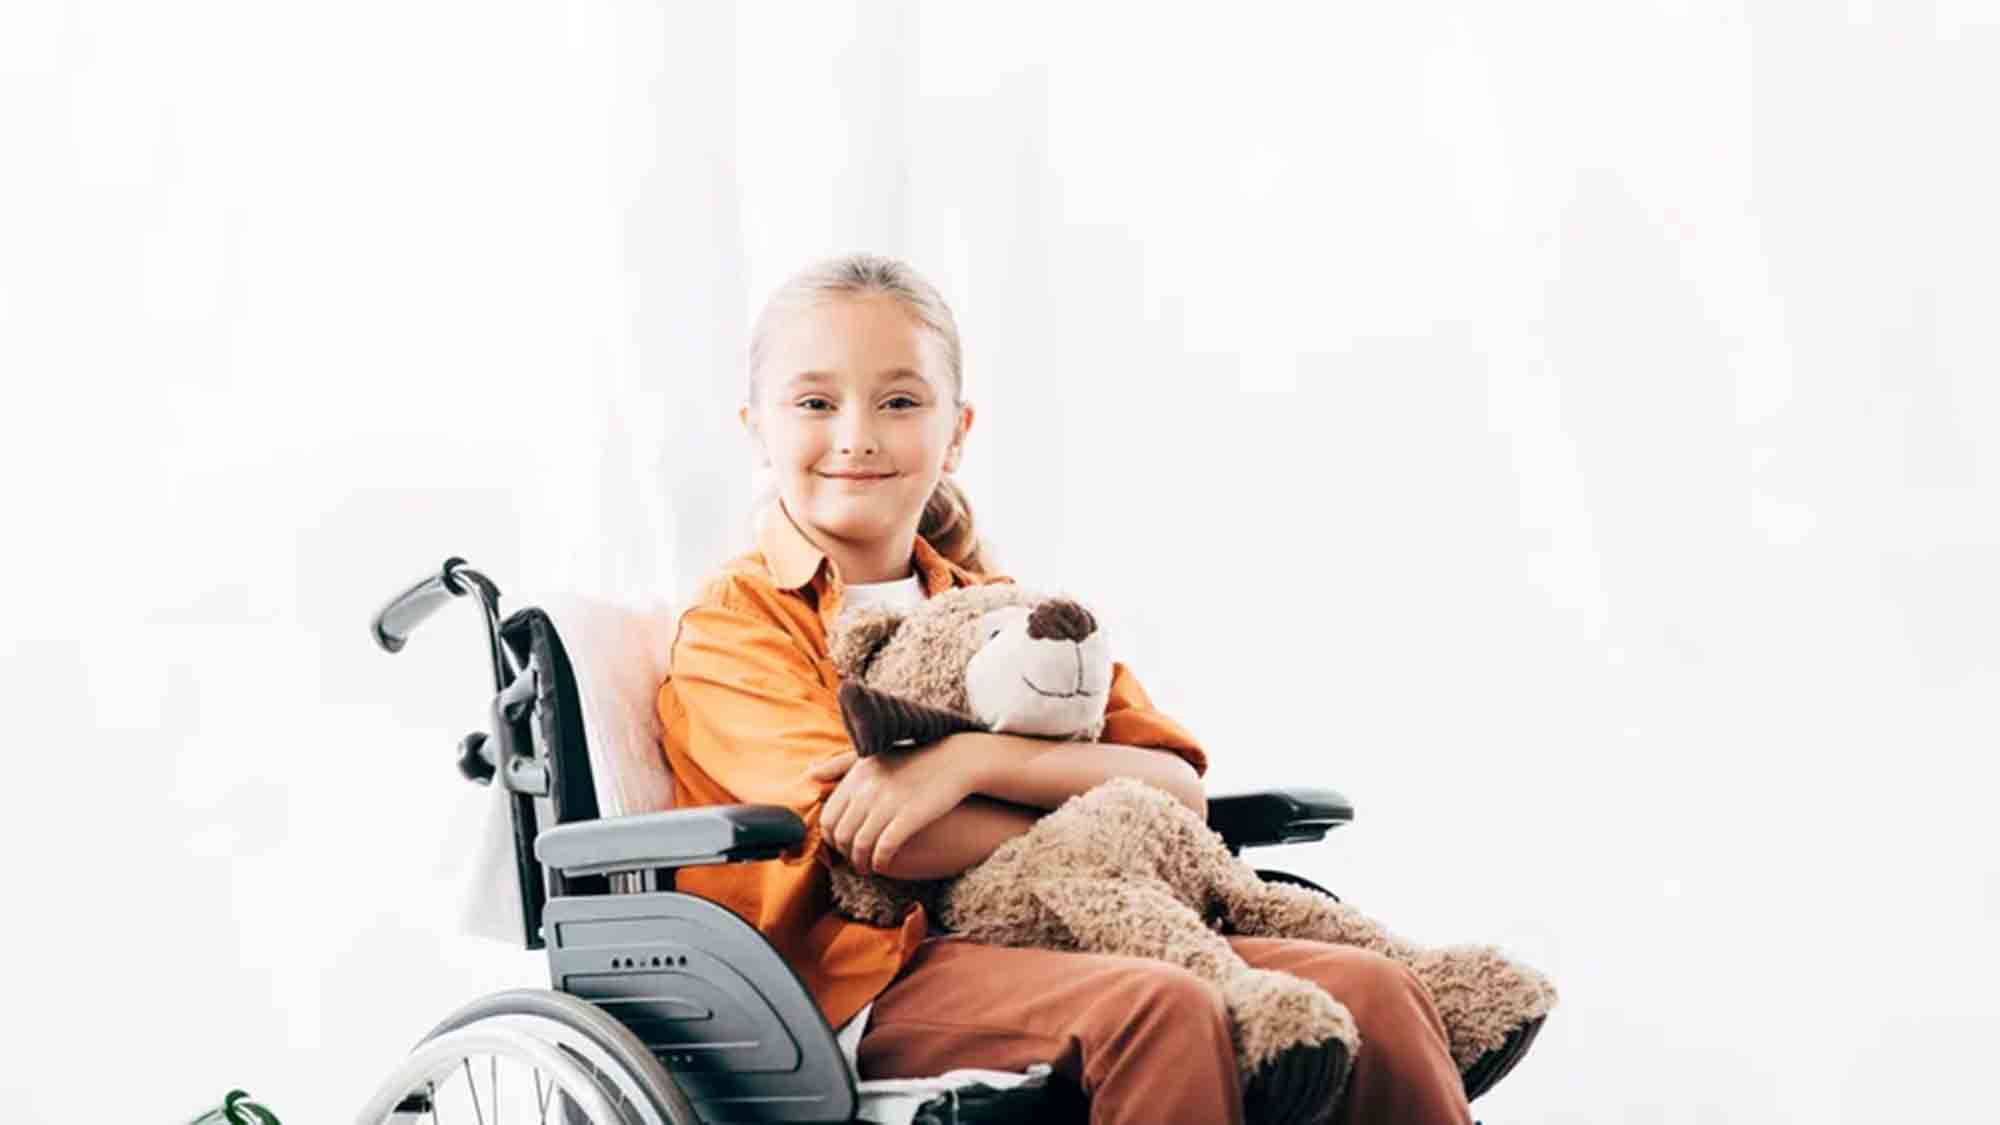 Beratungsstelle fordert höhere Erbschaftssteuer Freibeträge für gehandicapte Kinder